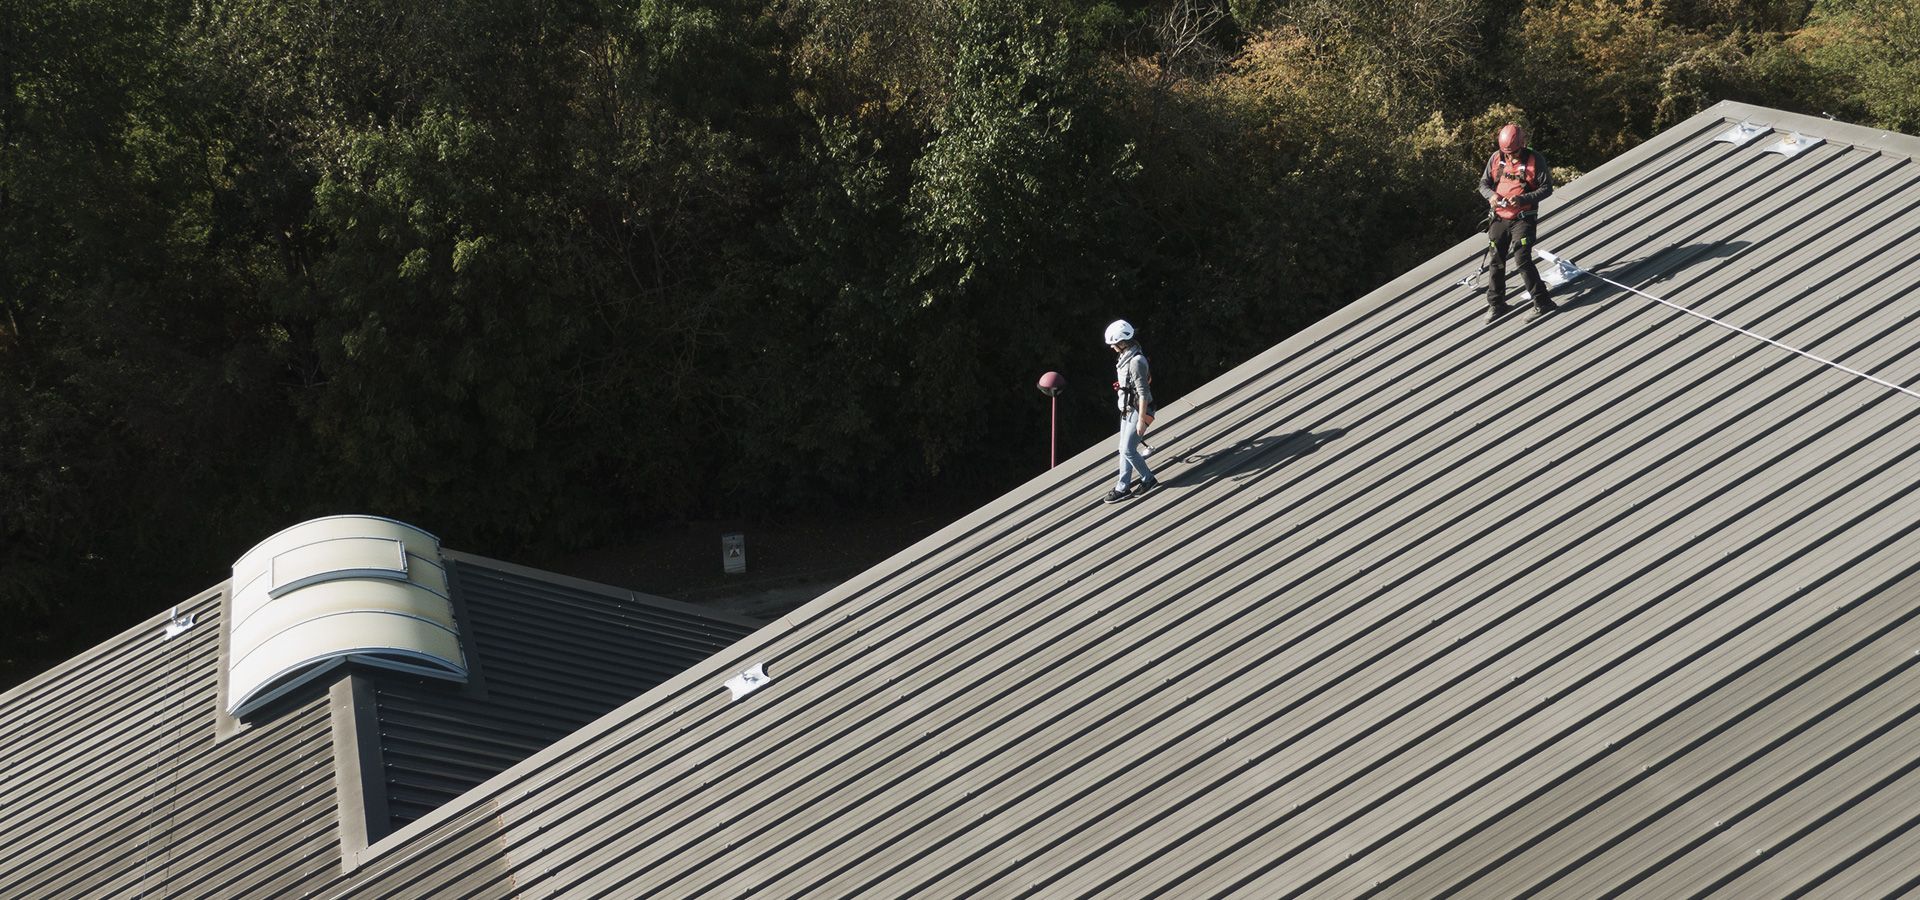 Sichern eines Daches mit einer Securope Seilsicherung